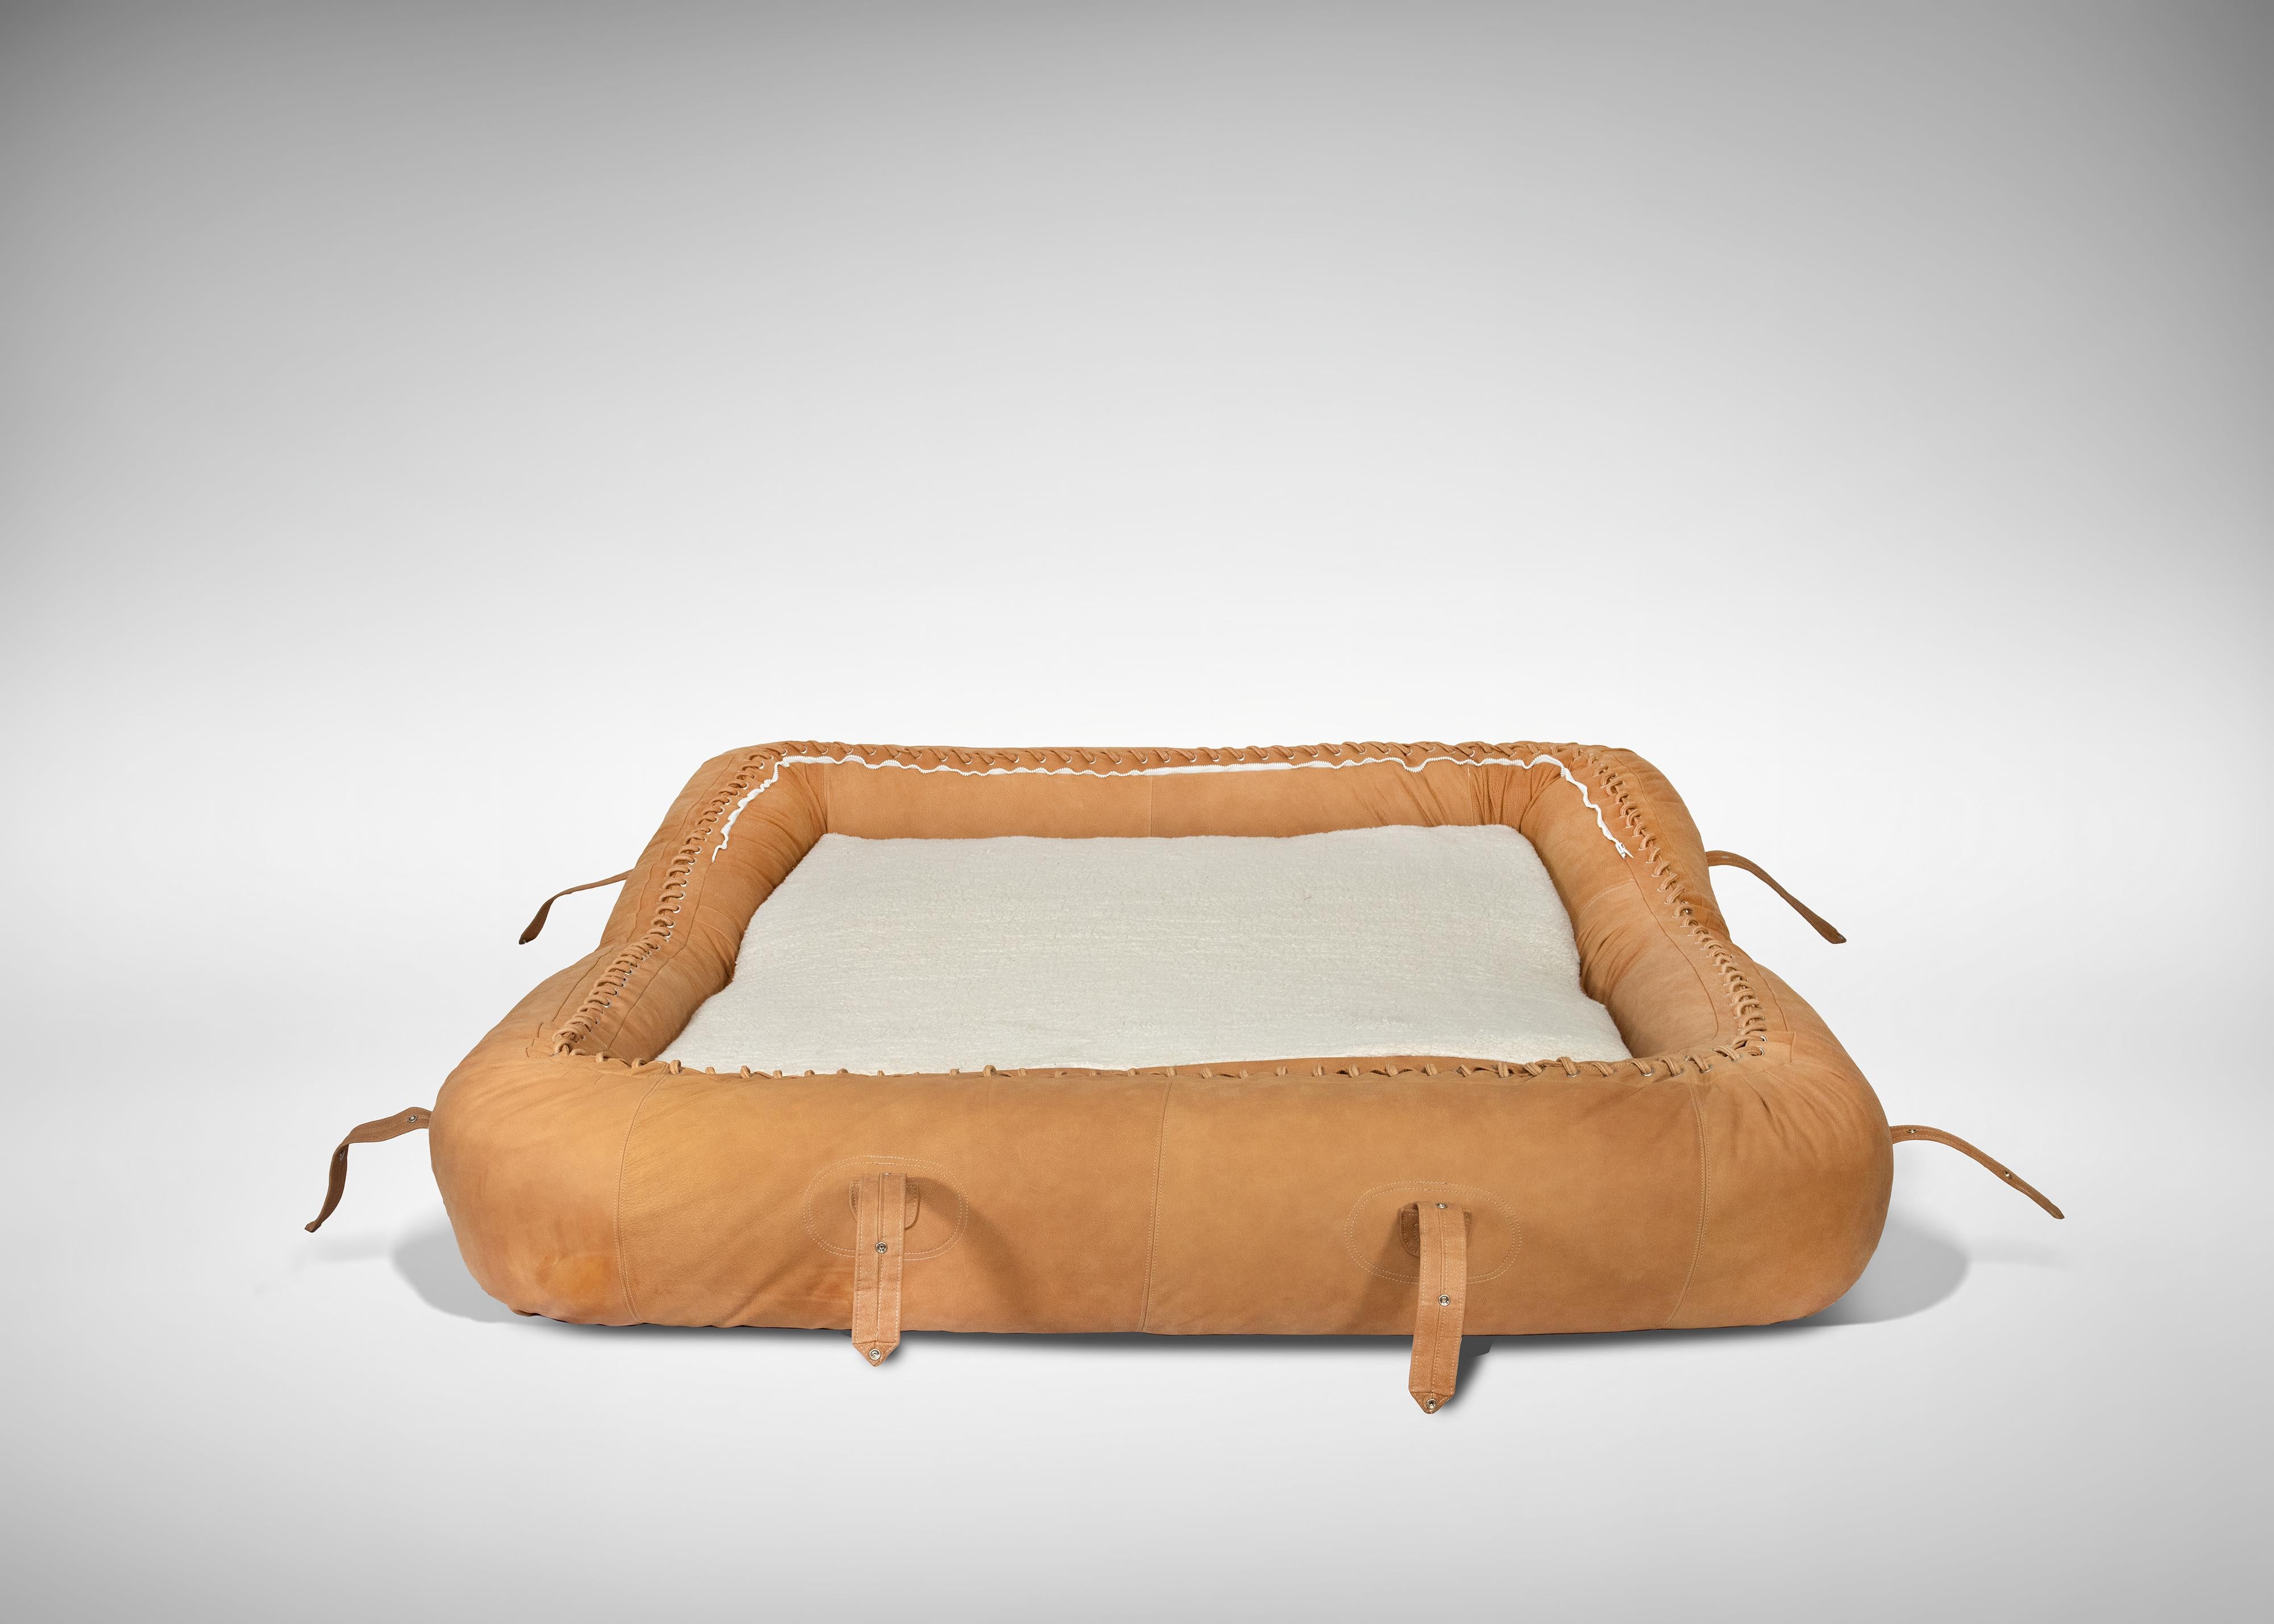 Le canapé 2 places Anfibio est un meuble design réalisé par Alessandro Becchi pour Giovannetti dans les années 1970.

Revêtement en cuir camel

Dimensions : 80 x 170 x 65 cm : 80 x 170 x 65 cm

Canapé-lit convertible iCon.

Très bon état.

 
Anfibio